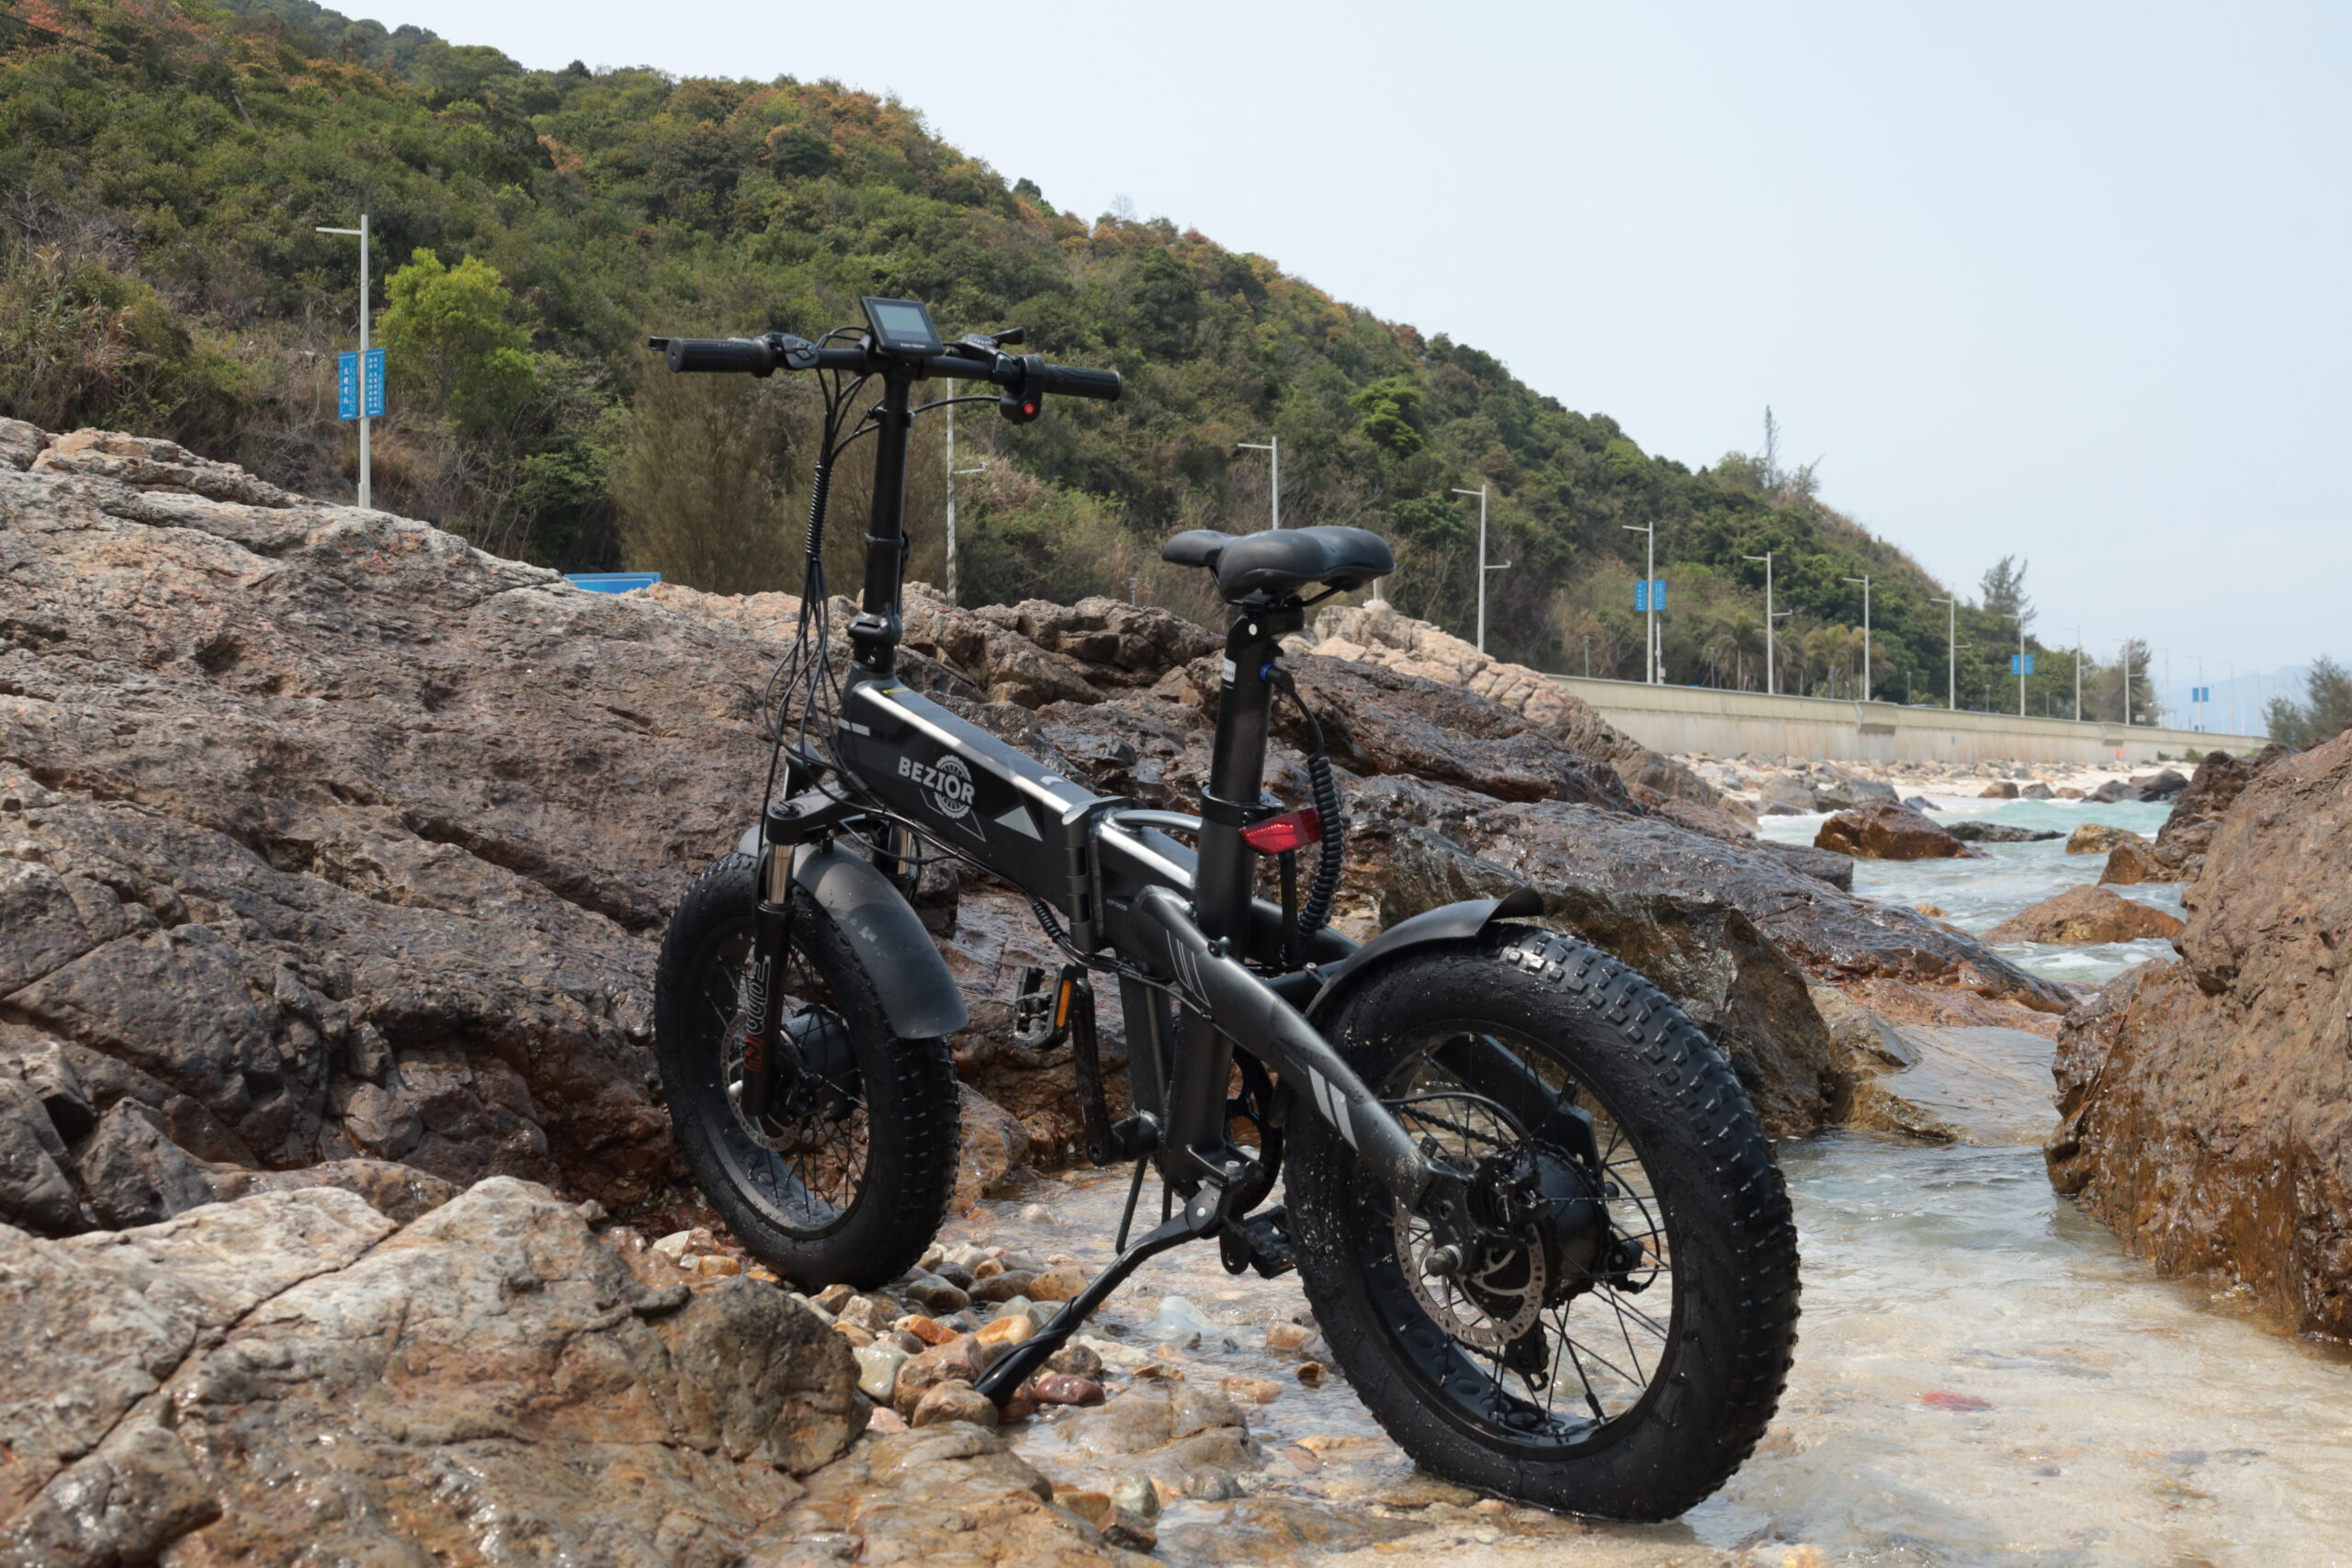 BEZIOR XF005, la bici elettrica da montagna con motori potenti